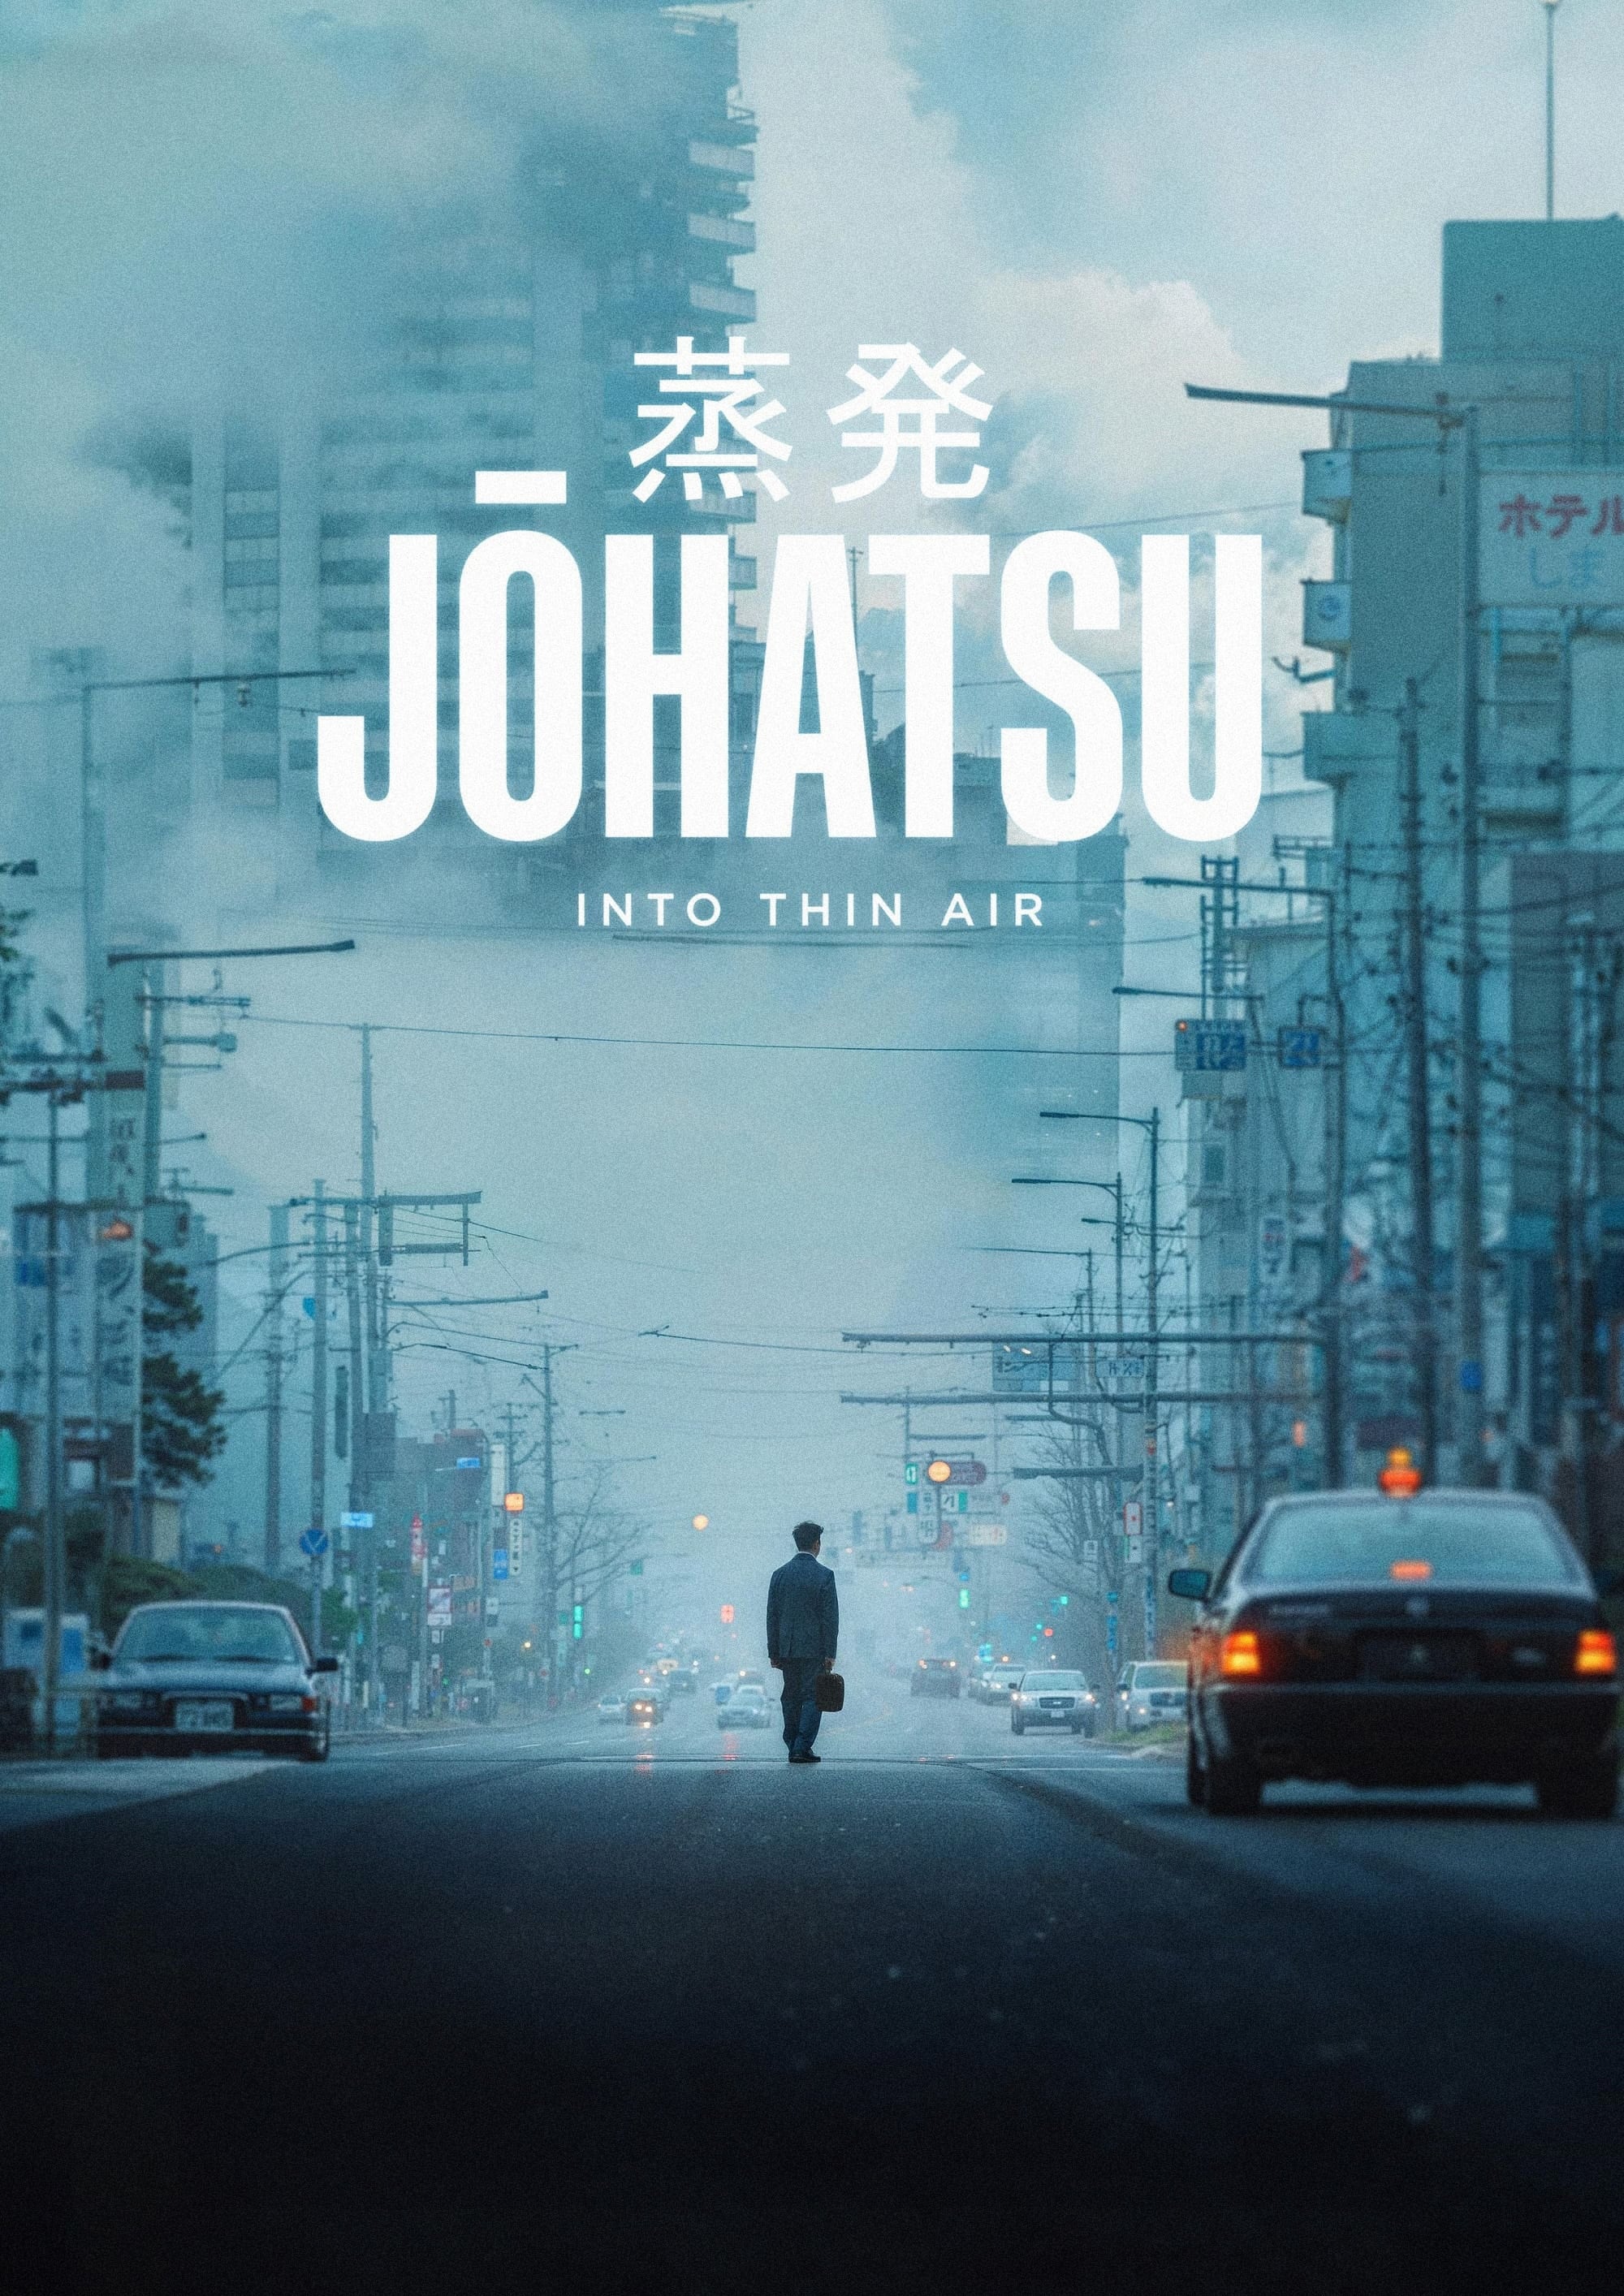 Johatsu - Into Thin Air